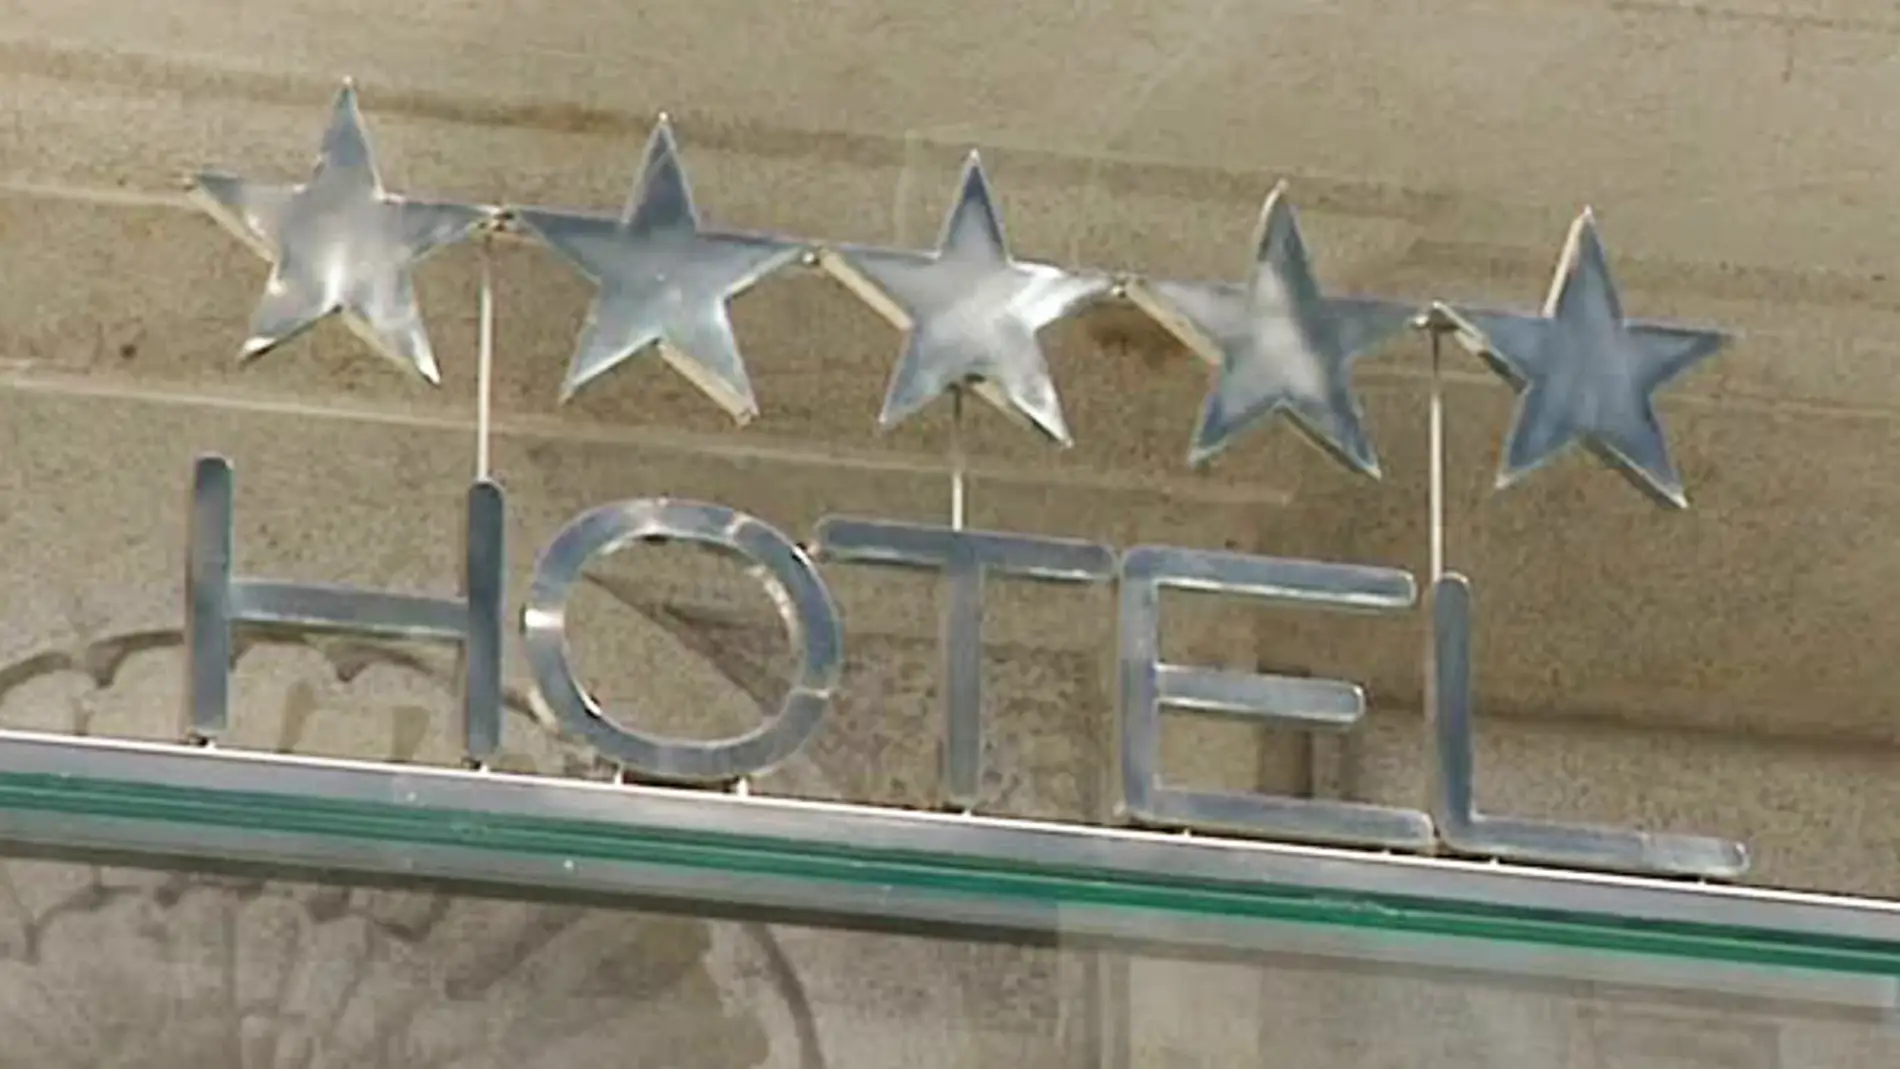 Los hoteles 5 estrellas costarán 50 euros la noche previa al derbi